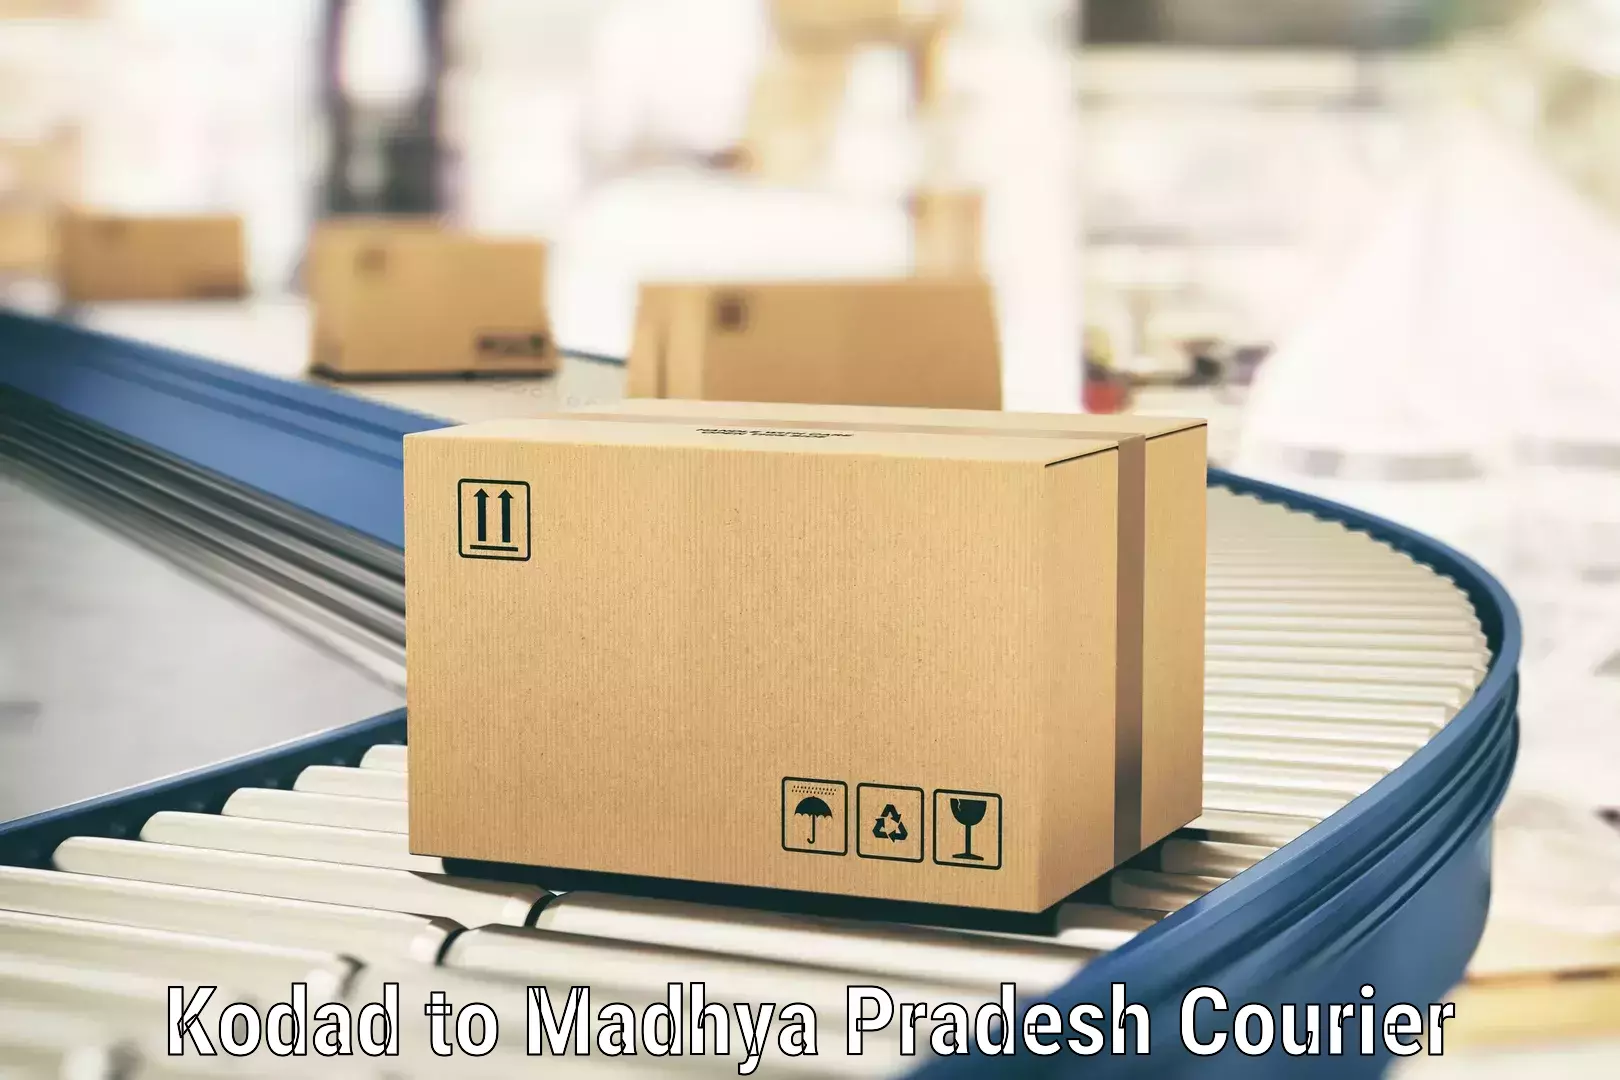 Customizable shipping options in Kodad to Lavkush Nagar